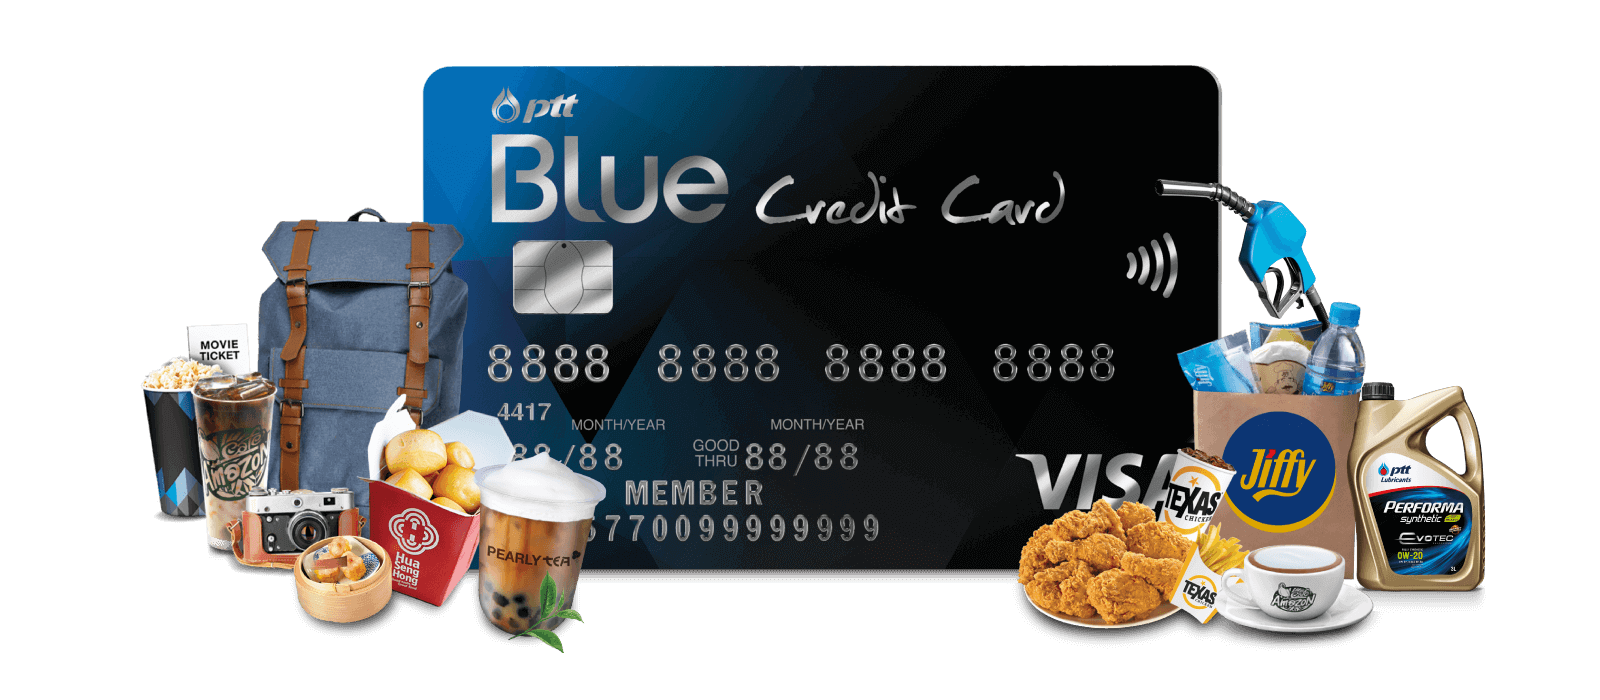 บัตรเครดิตเติมน้ำมัน บัตรเครดิต ปตท. บัตรเดียวจบ ครบทุกความต้องการที่ PTT Station สมัครบัตร PTT Blue Credit Card รับสิทธิพิเศษที่ปั้มน้ำมัน PTT Station 